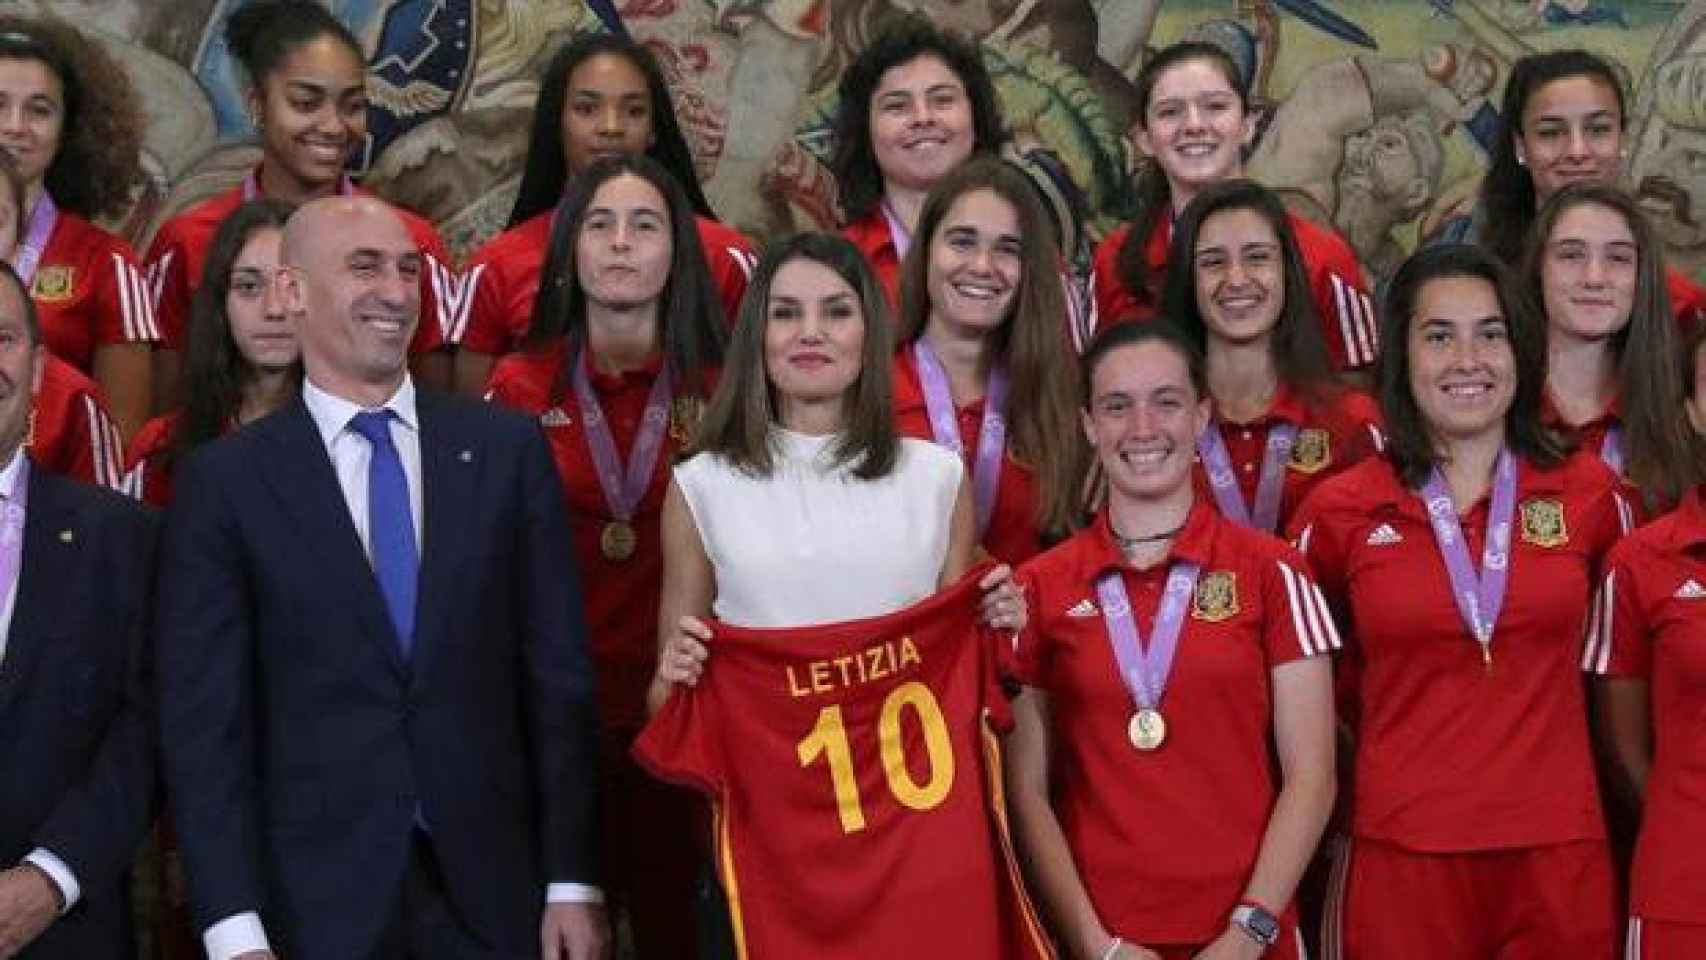 La reina Leitizia, junto a Luis Rubiales, presidente de la RFEF, con la selección Sub17 campeona del mundo